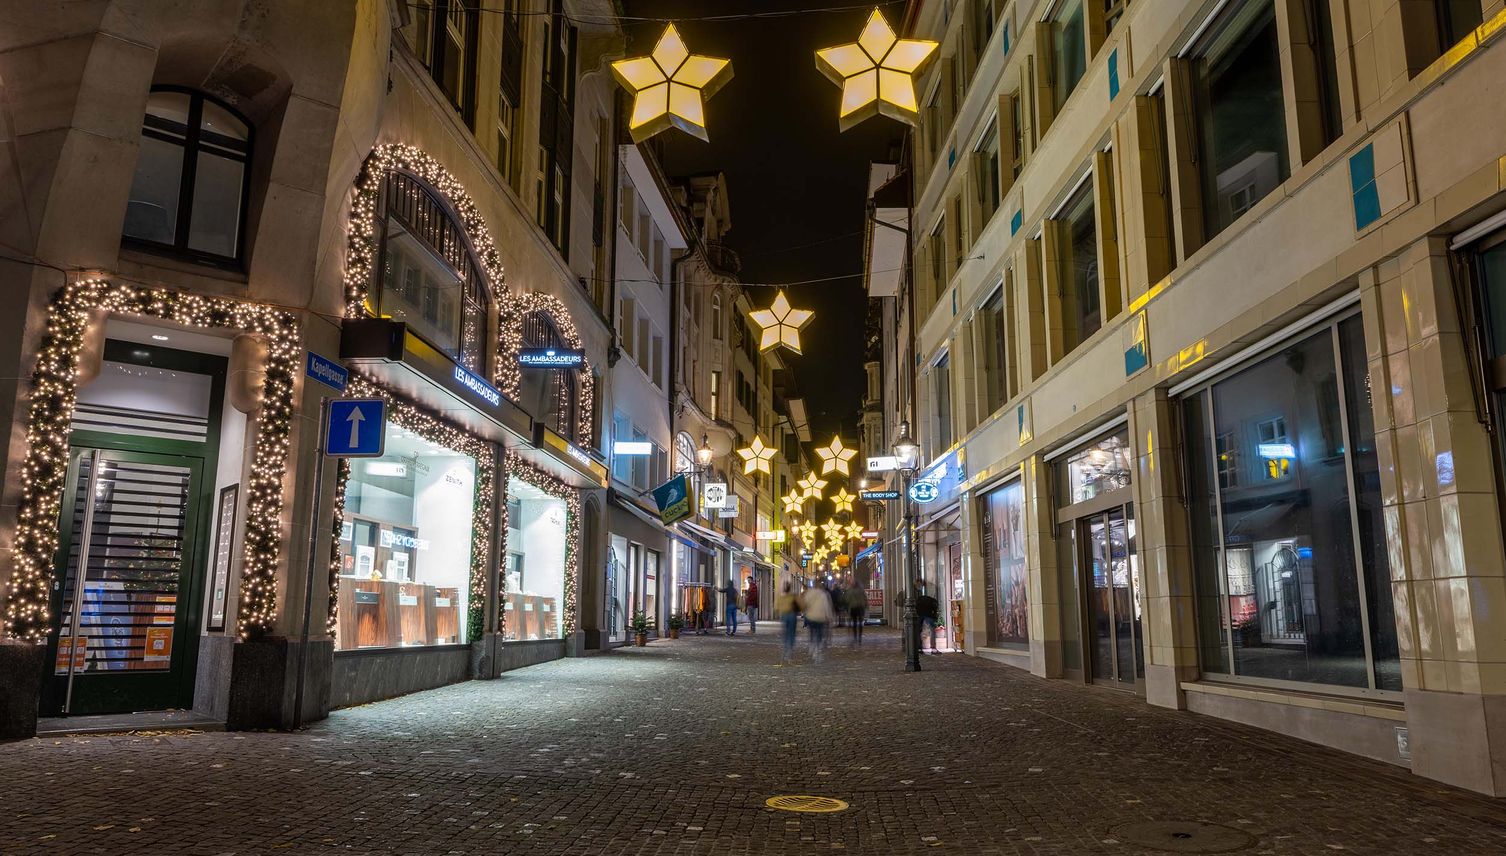 So sieht es in Luzern während der Adventszeit aus